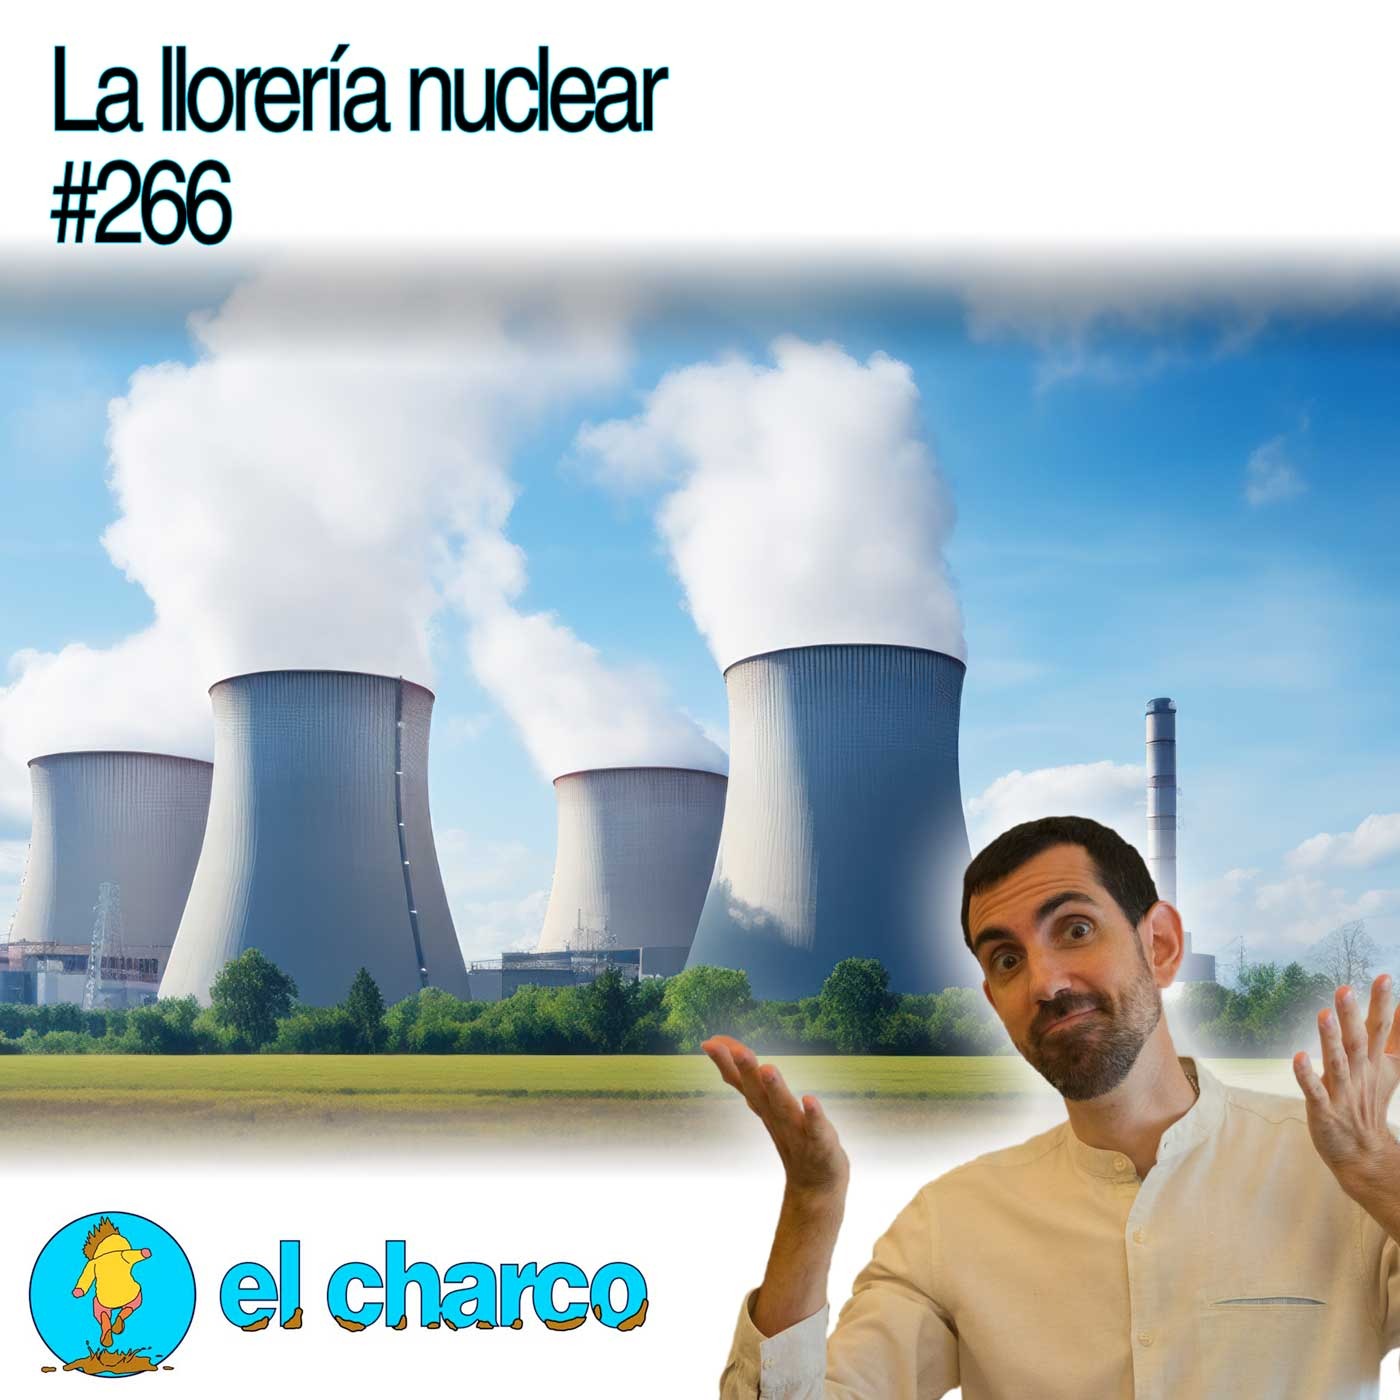 La llorería nuclear #266